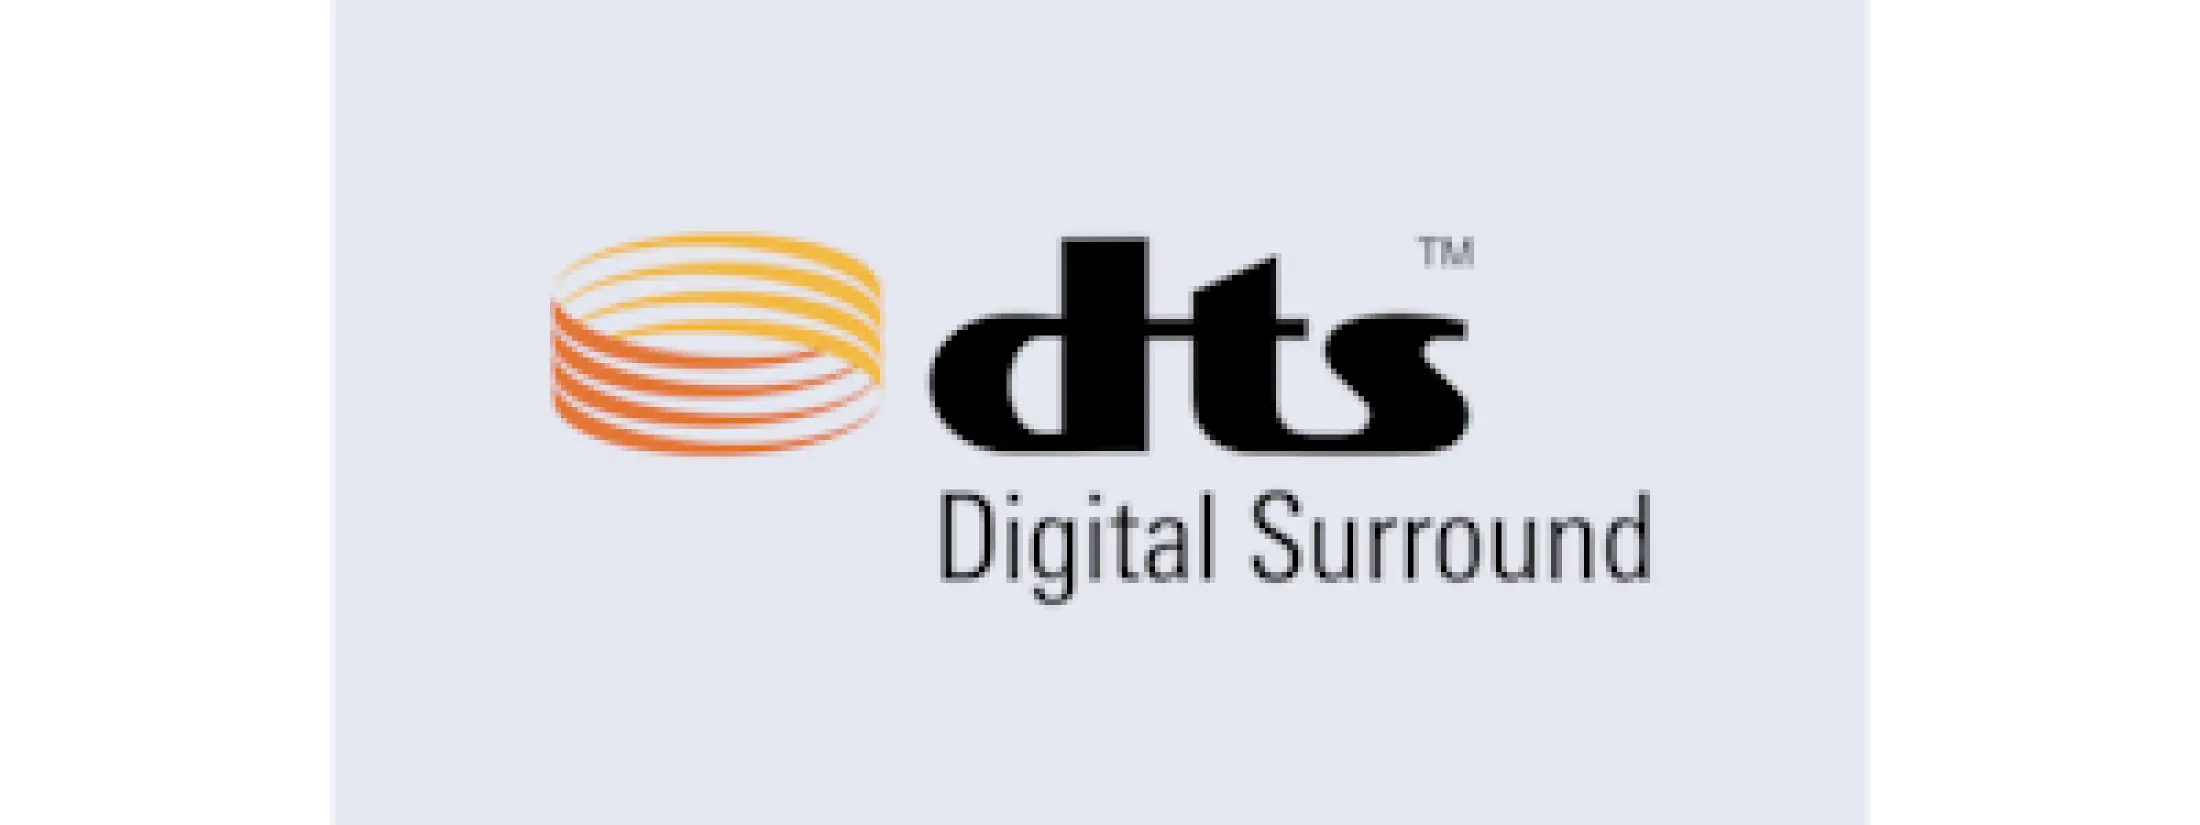 Logo DTS Digital Surround